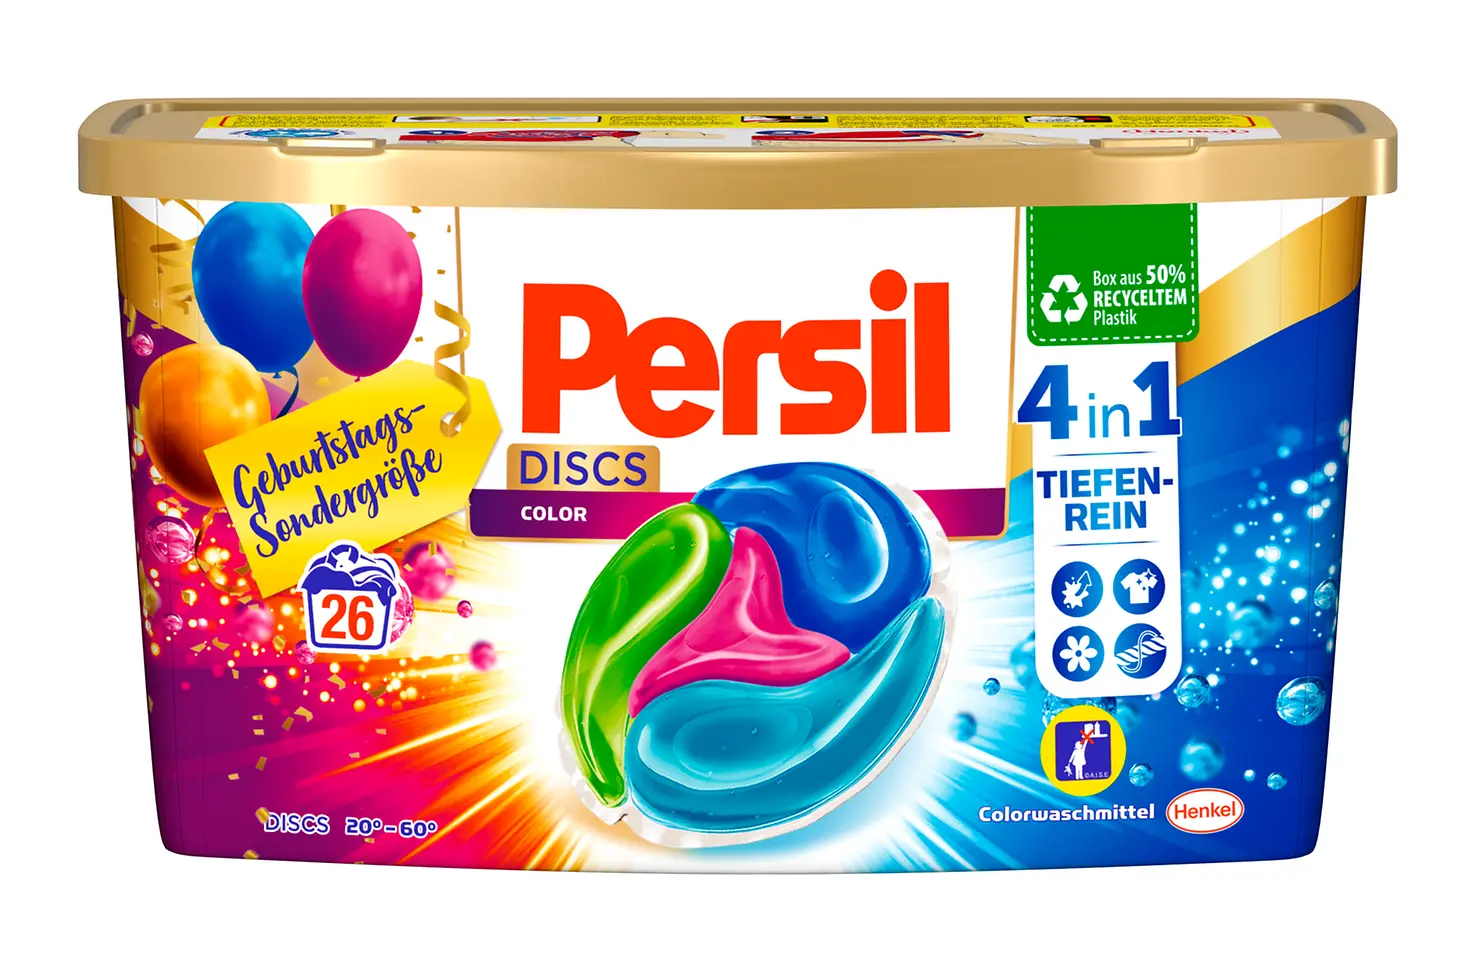 Die neue Persil-DISCS Geburtstagsedition